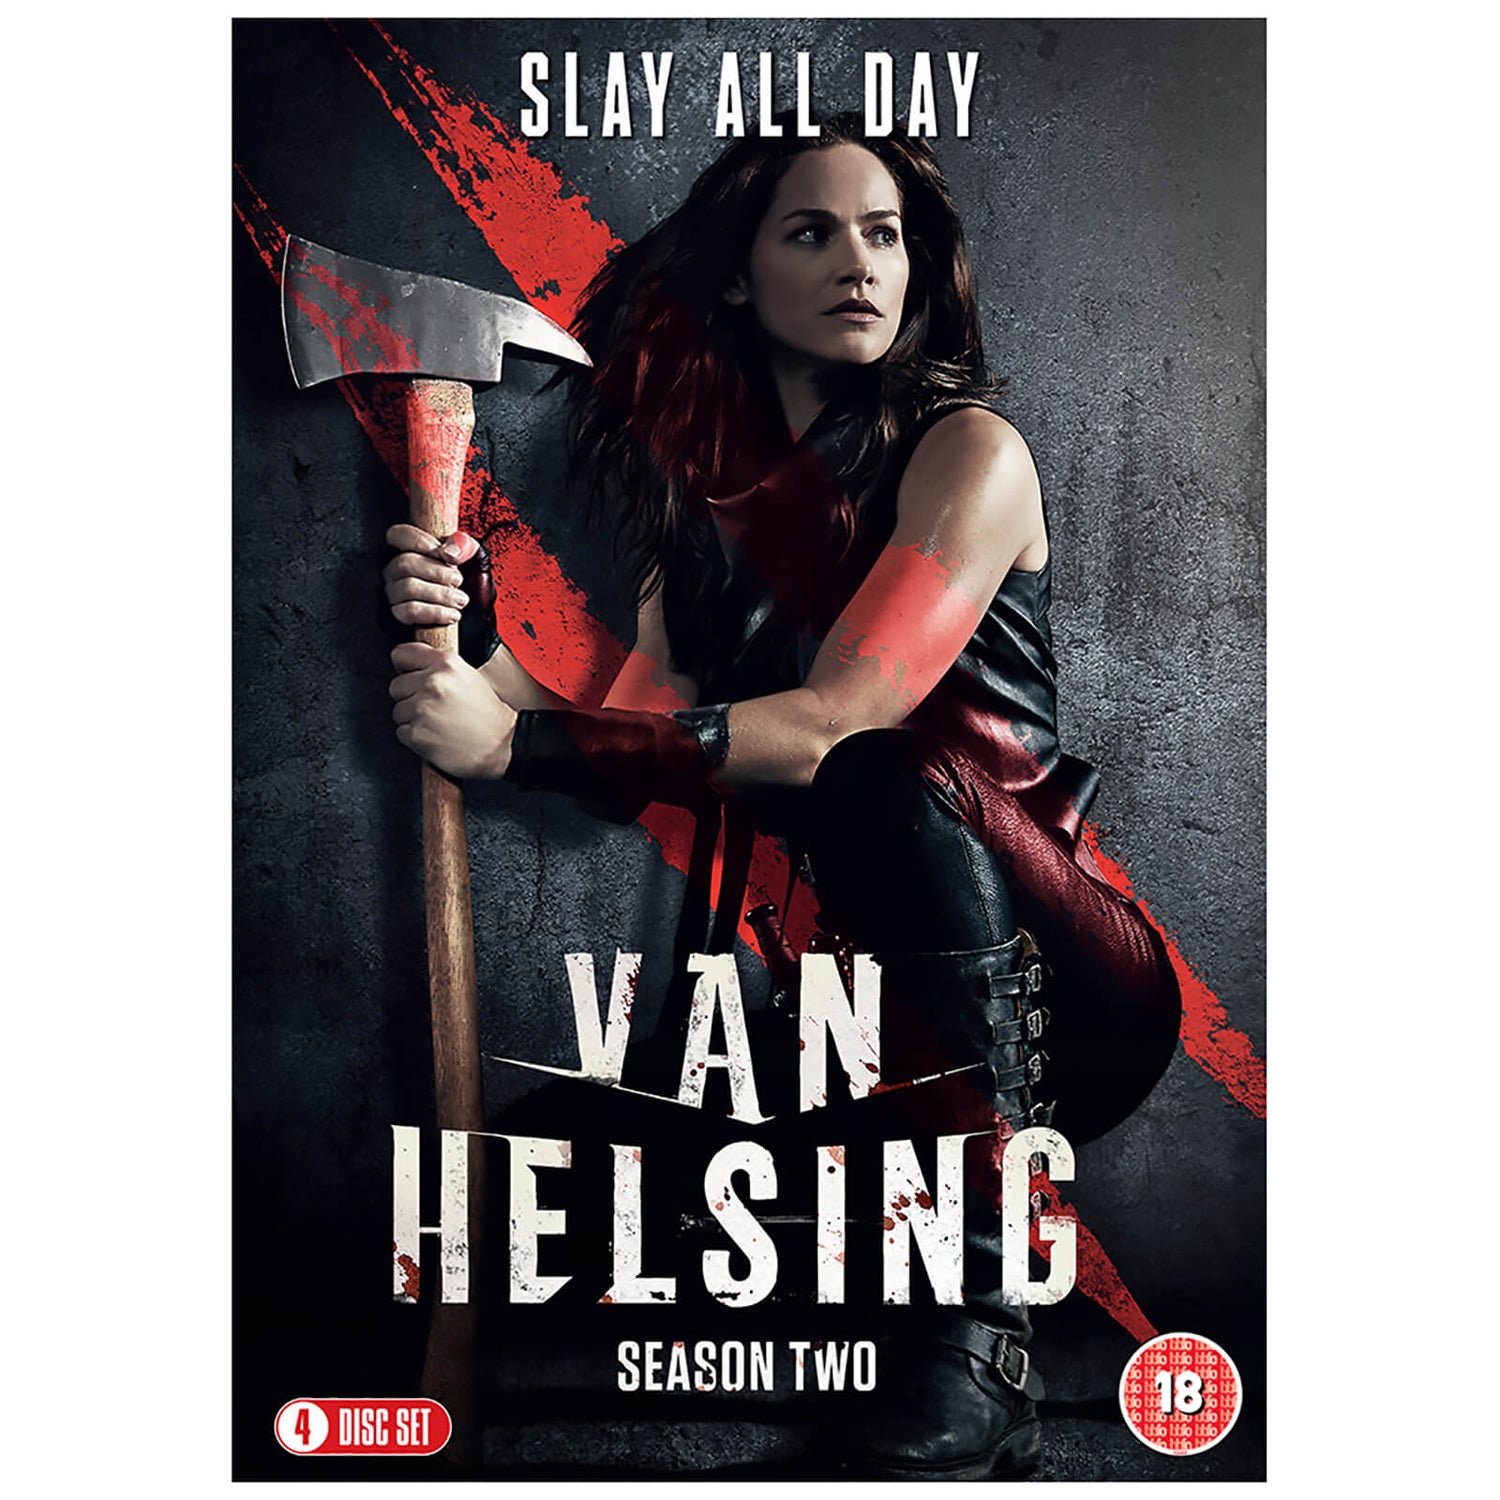 Van Helsing: Season Two